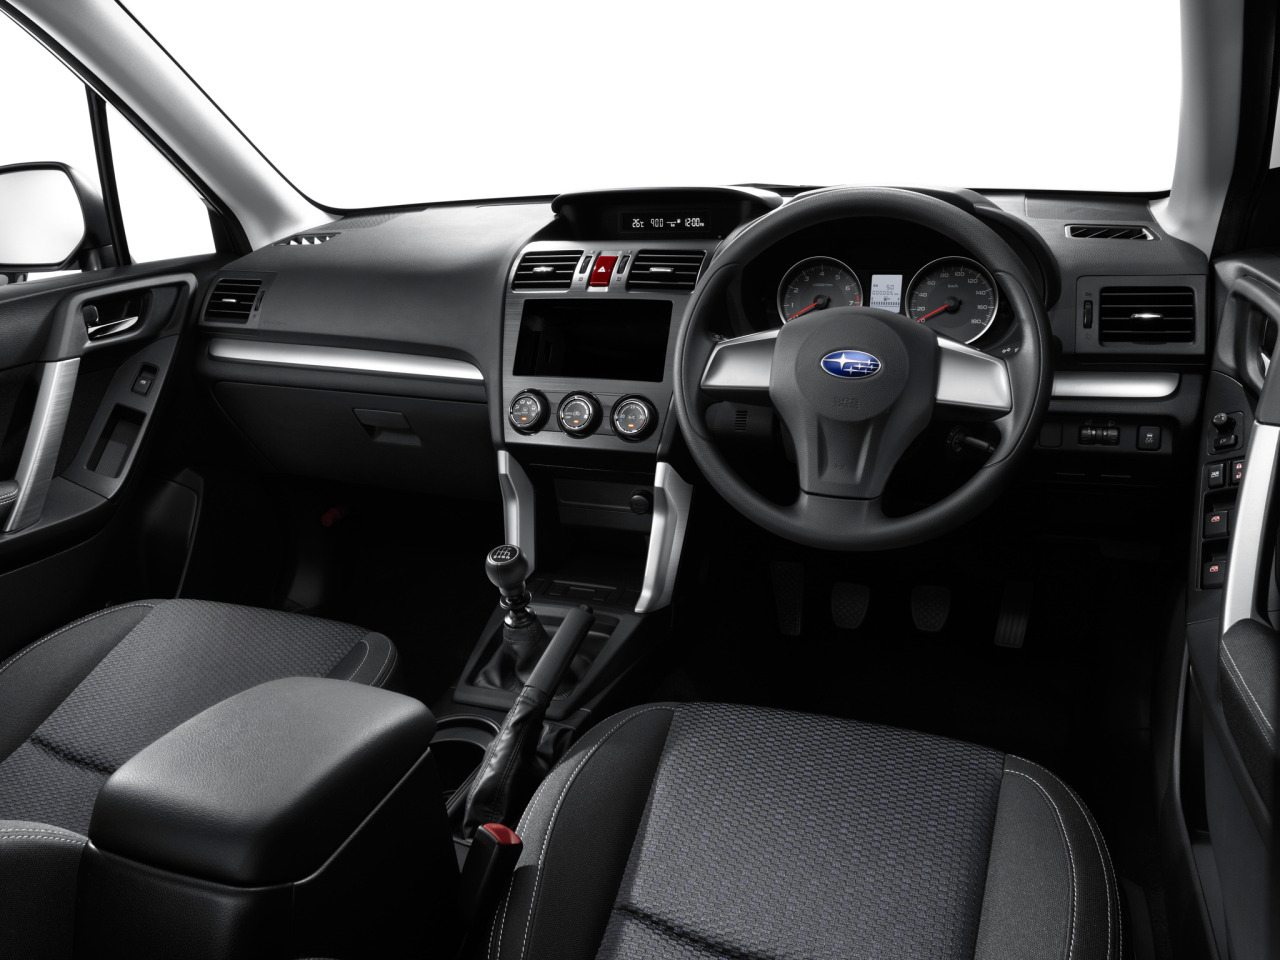 Subaru publica más imágenes de su nuevo Forester y hasta un par de vídeos